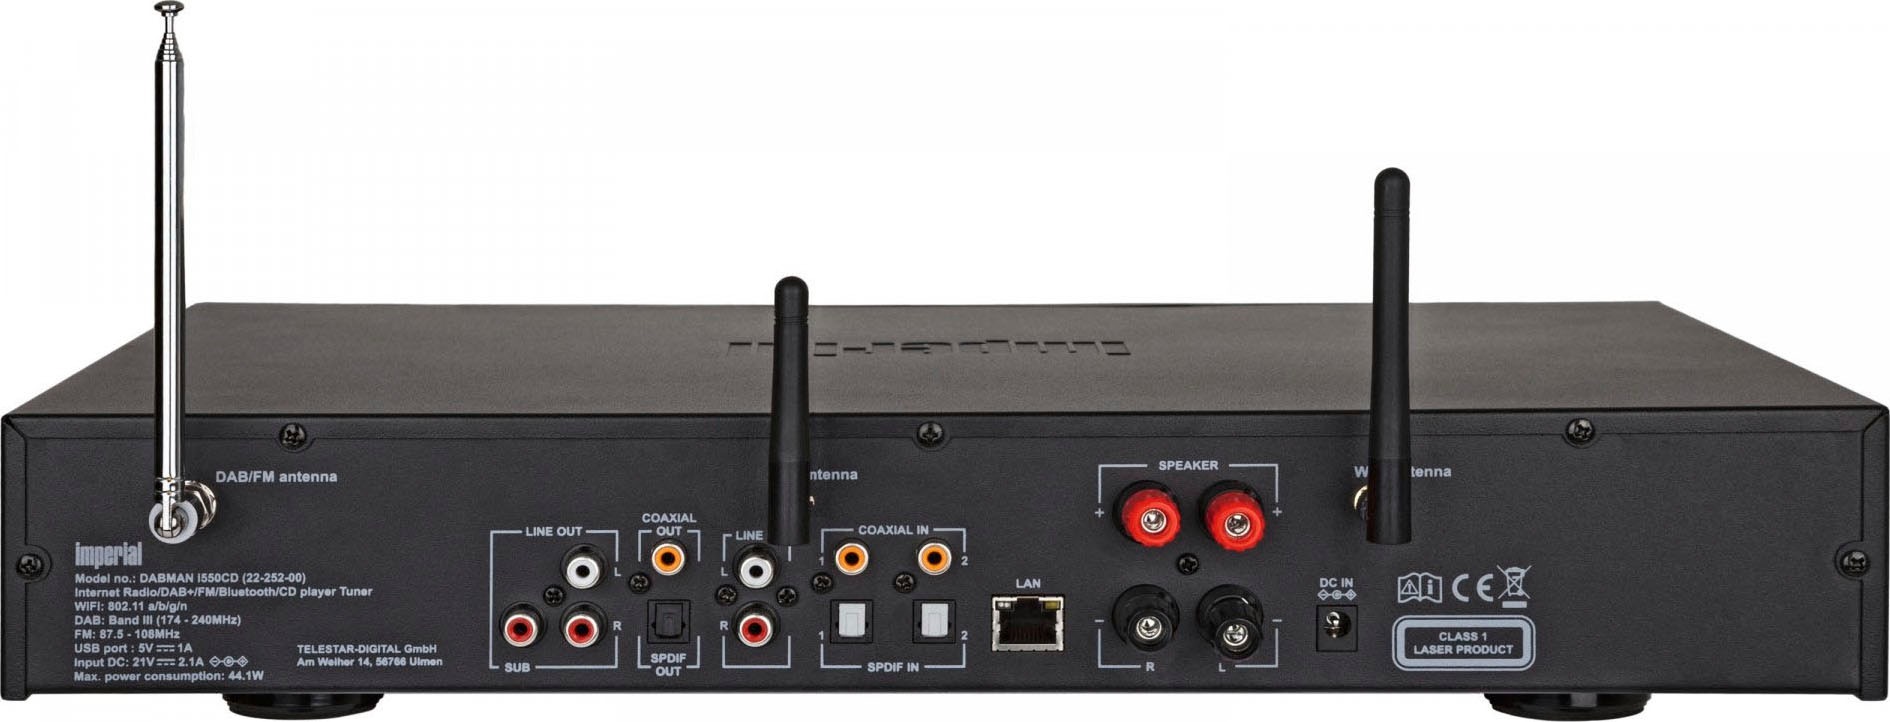 IMPERIAL by TELESTAR (DAB+)-UKW Rechnung i550 (Bluetooth-WLAN-LAN RDS »DABMAN Digitalradio CD«, Digitalradio auf mit kaufen W) 84 (Ethernet) (DAB+)